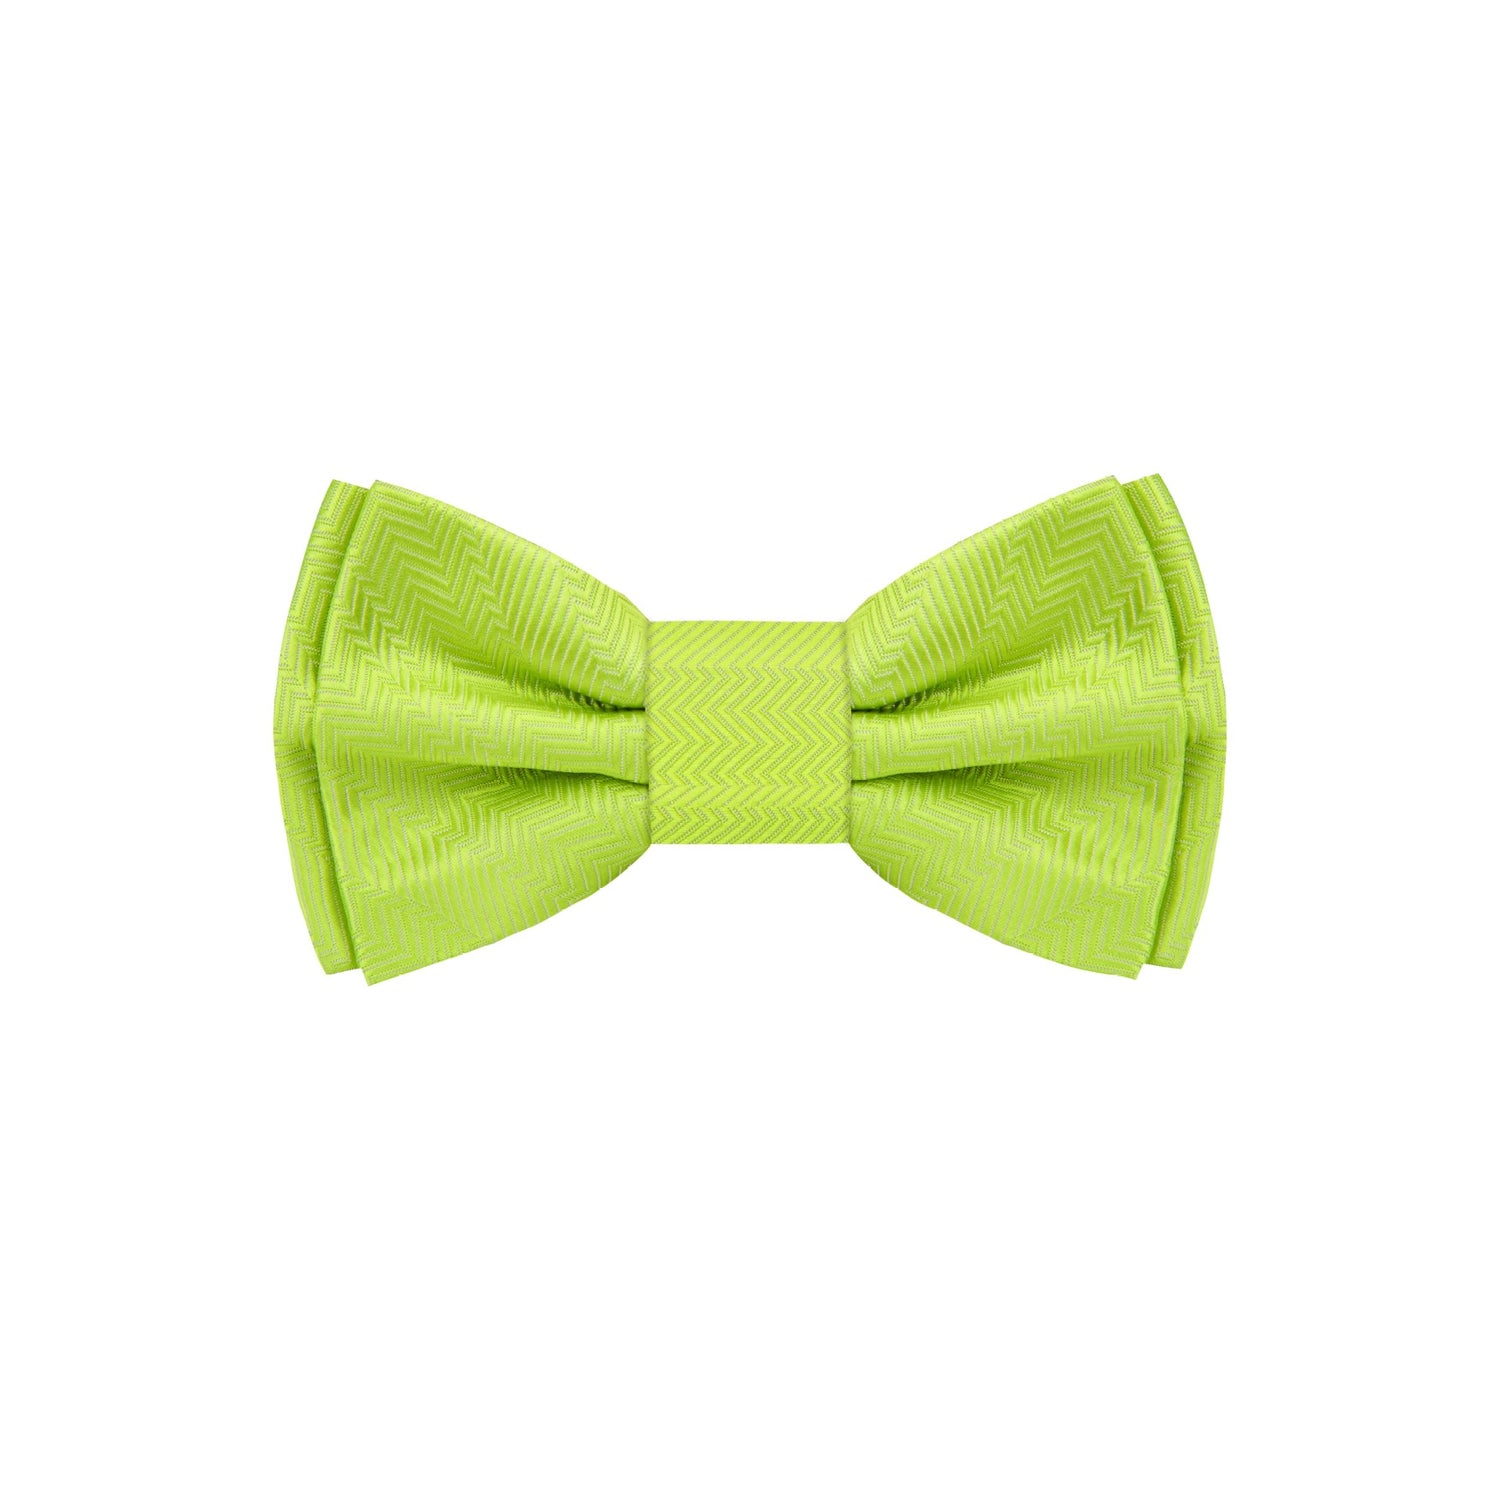 A Sweet Lime Green Pattern Silk Self Tie Bow Tie